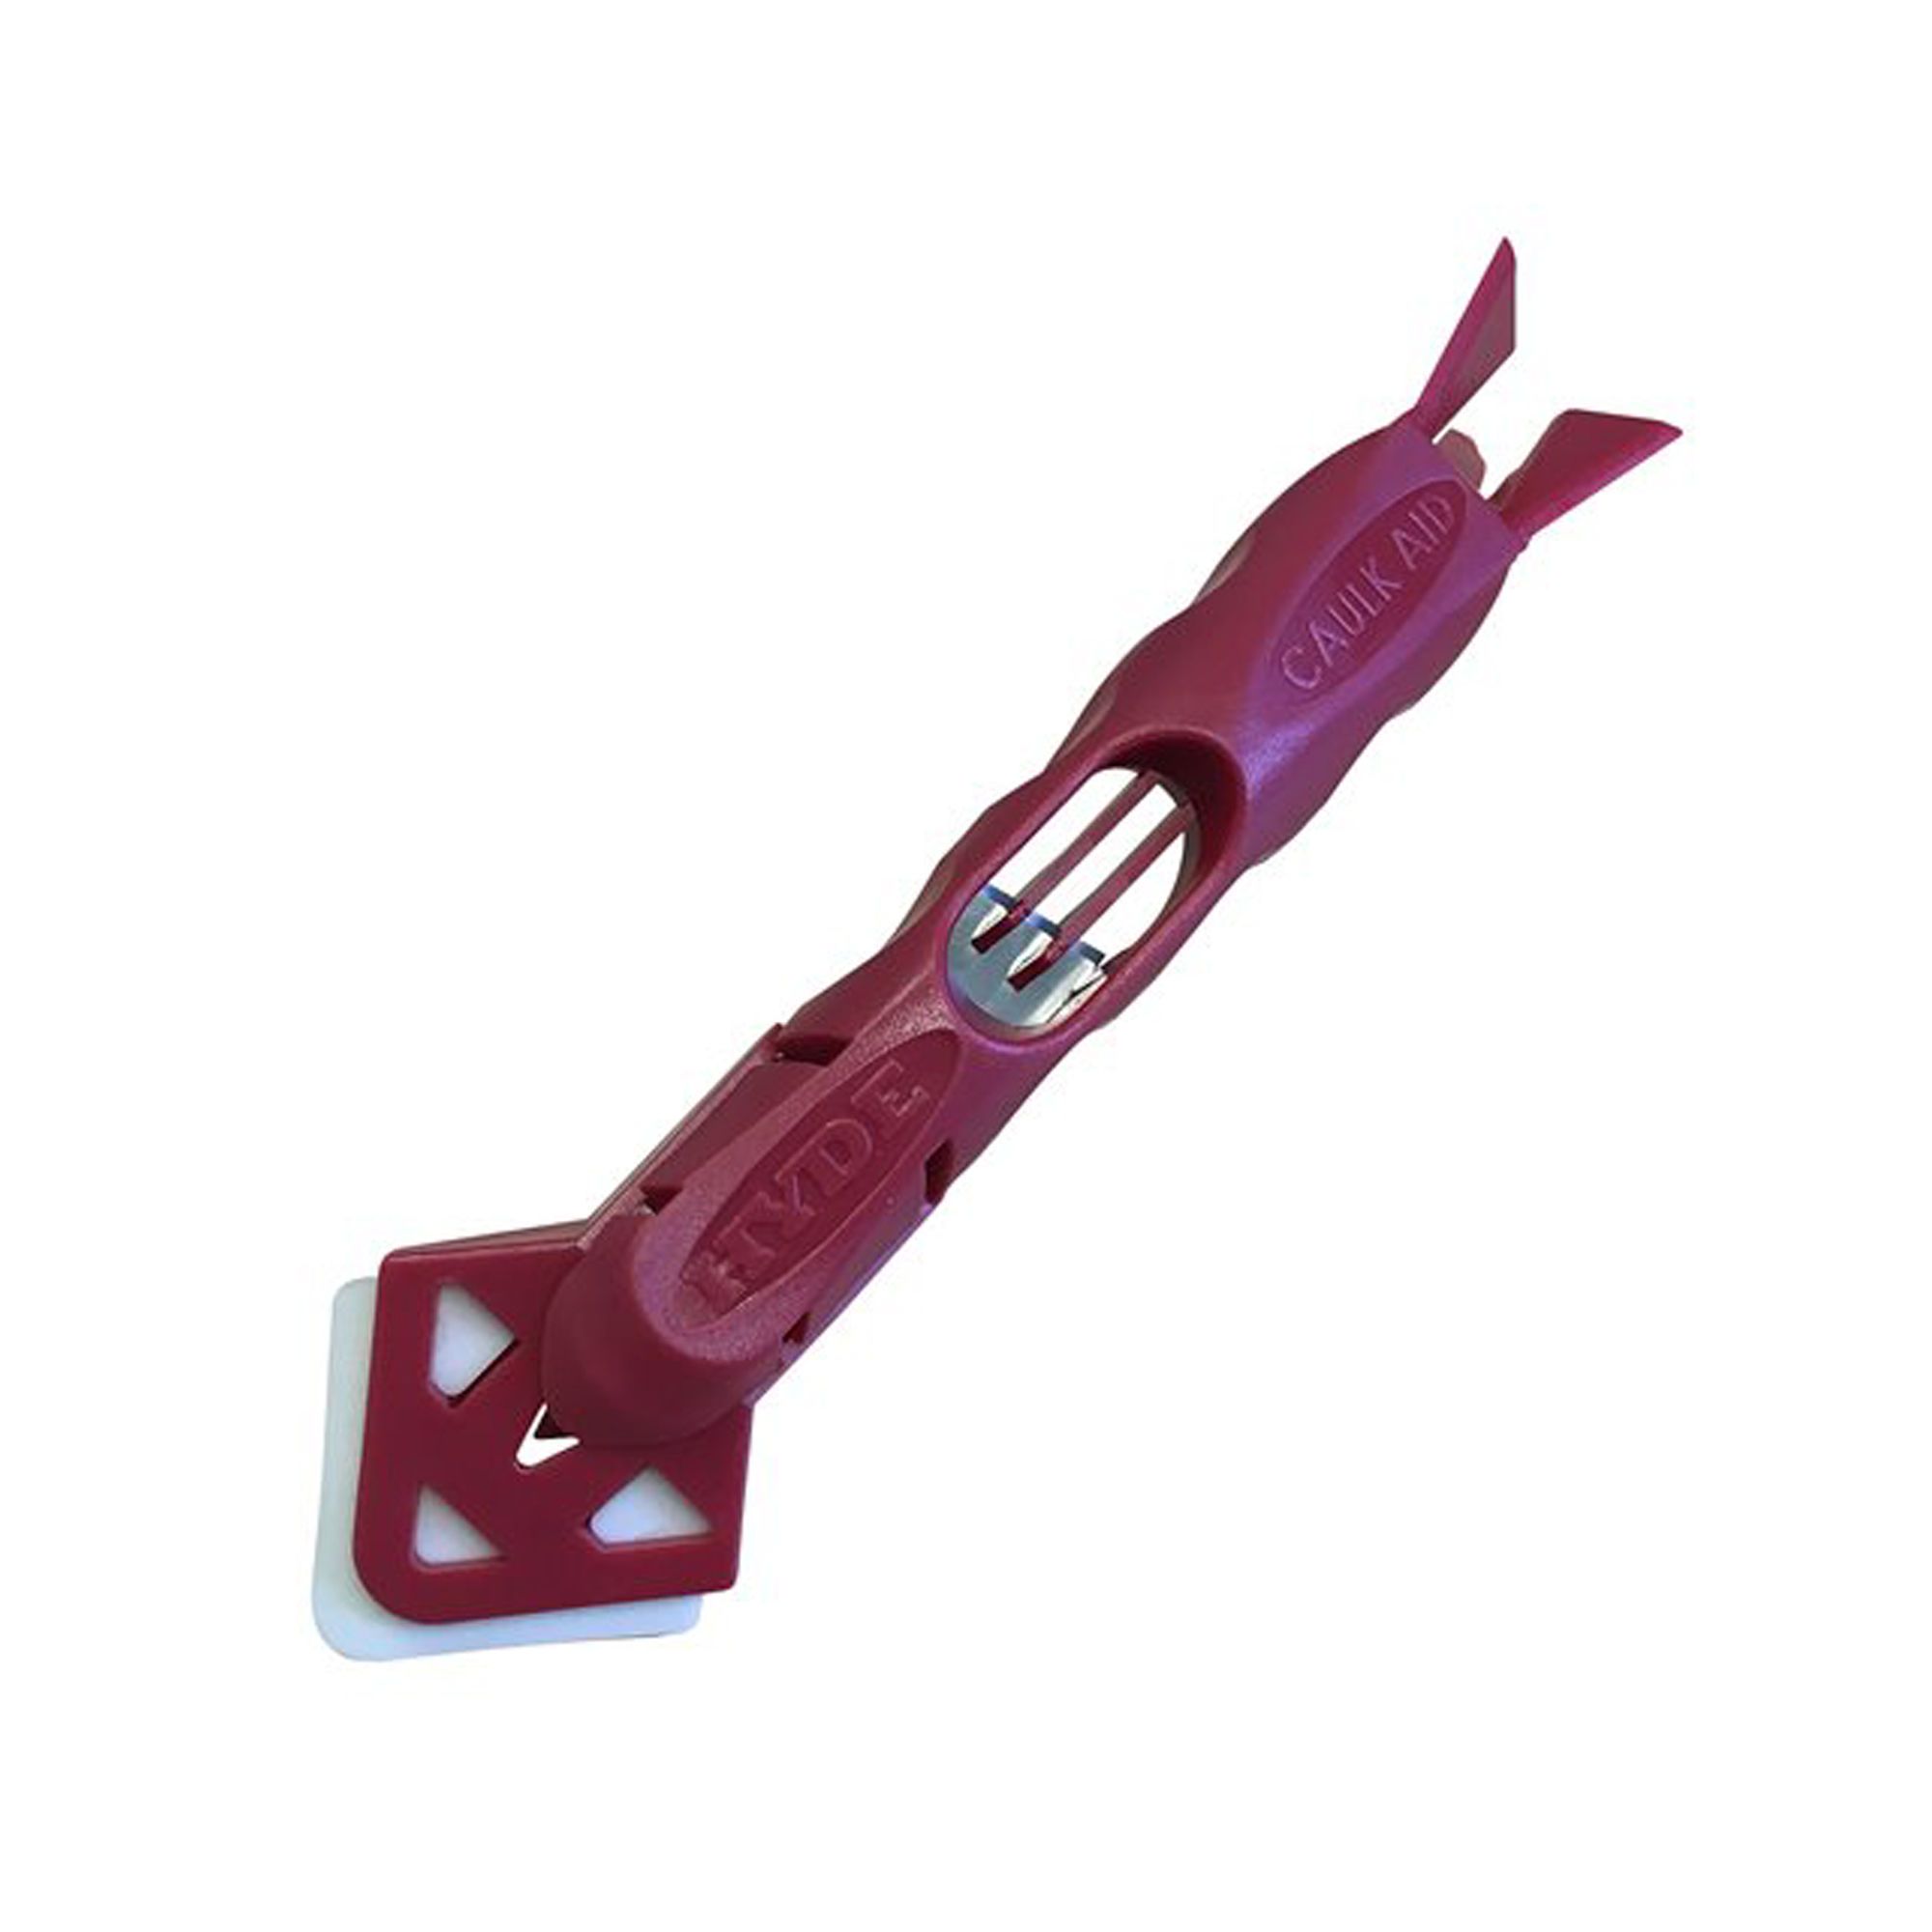 Outil de calfeutrage, kit d'outils de calfeutrage 3 en 1 en silicone (tête  en acier inoxydable) – Outil de retrait de calfeutrage, outil de finition  pour carrelage de cuisine, salle de bain